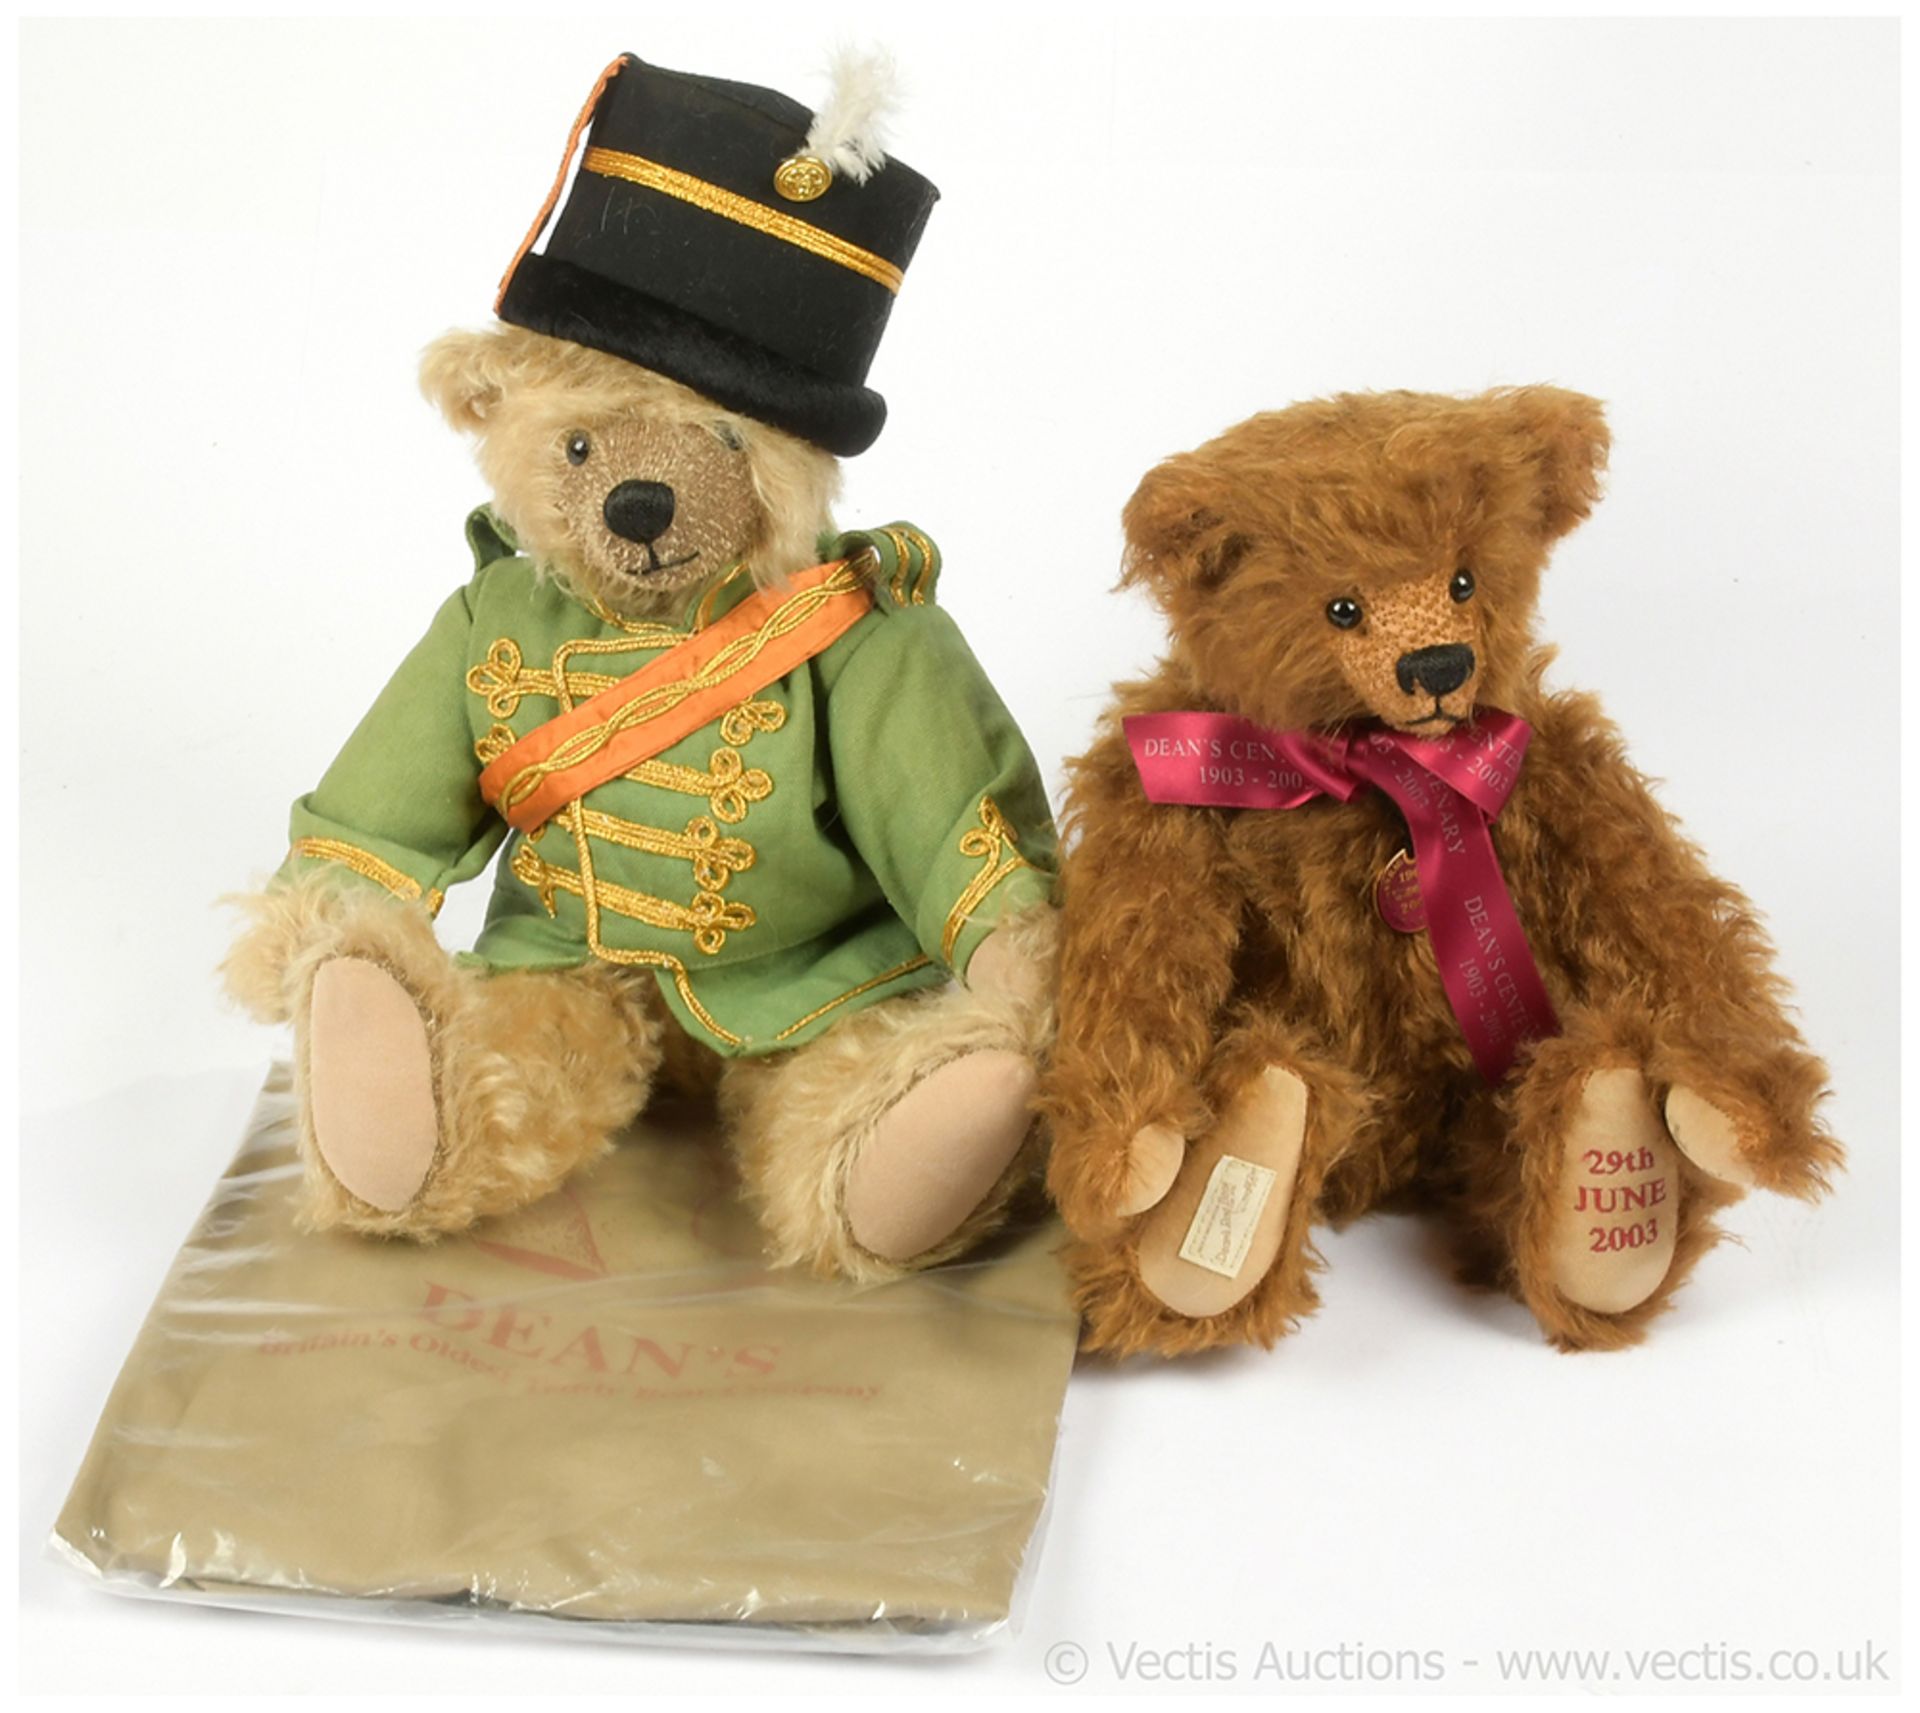 GRP inc Deans Rag Book Centenary teddy bears: